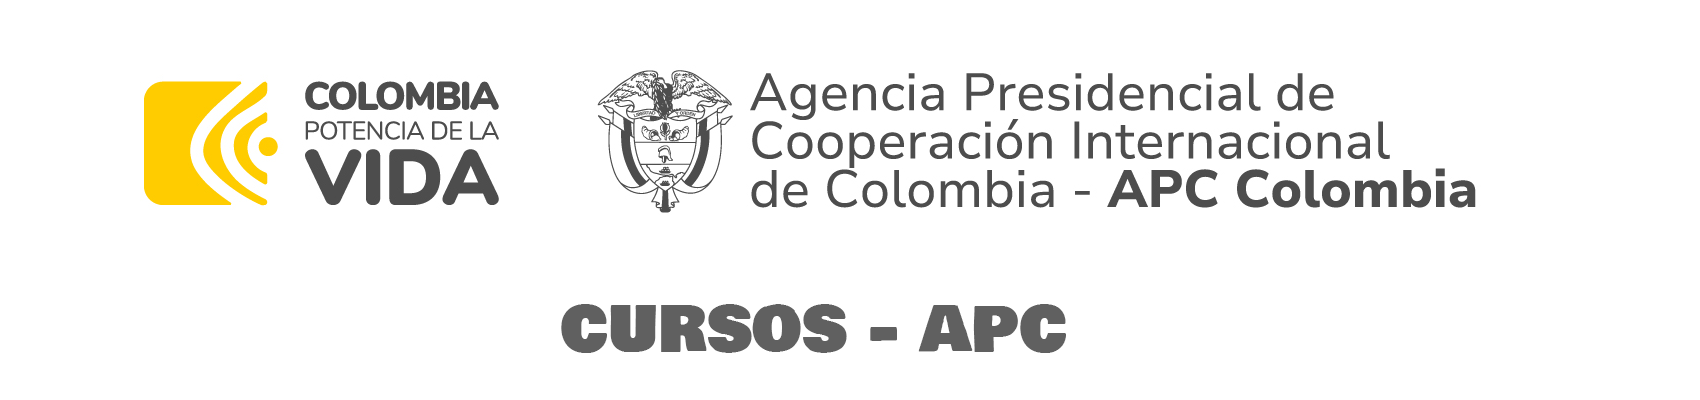 CURSOS APC COLOMBIA